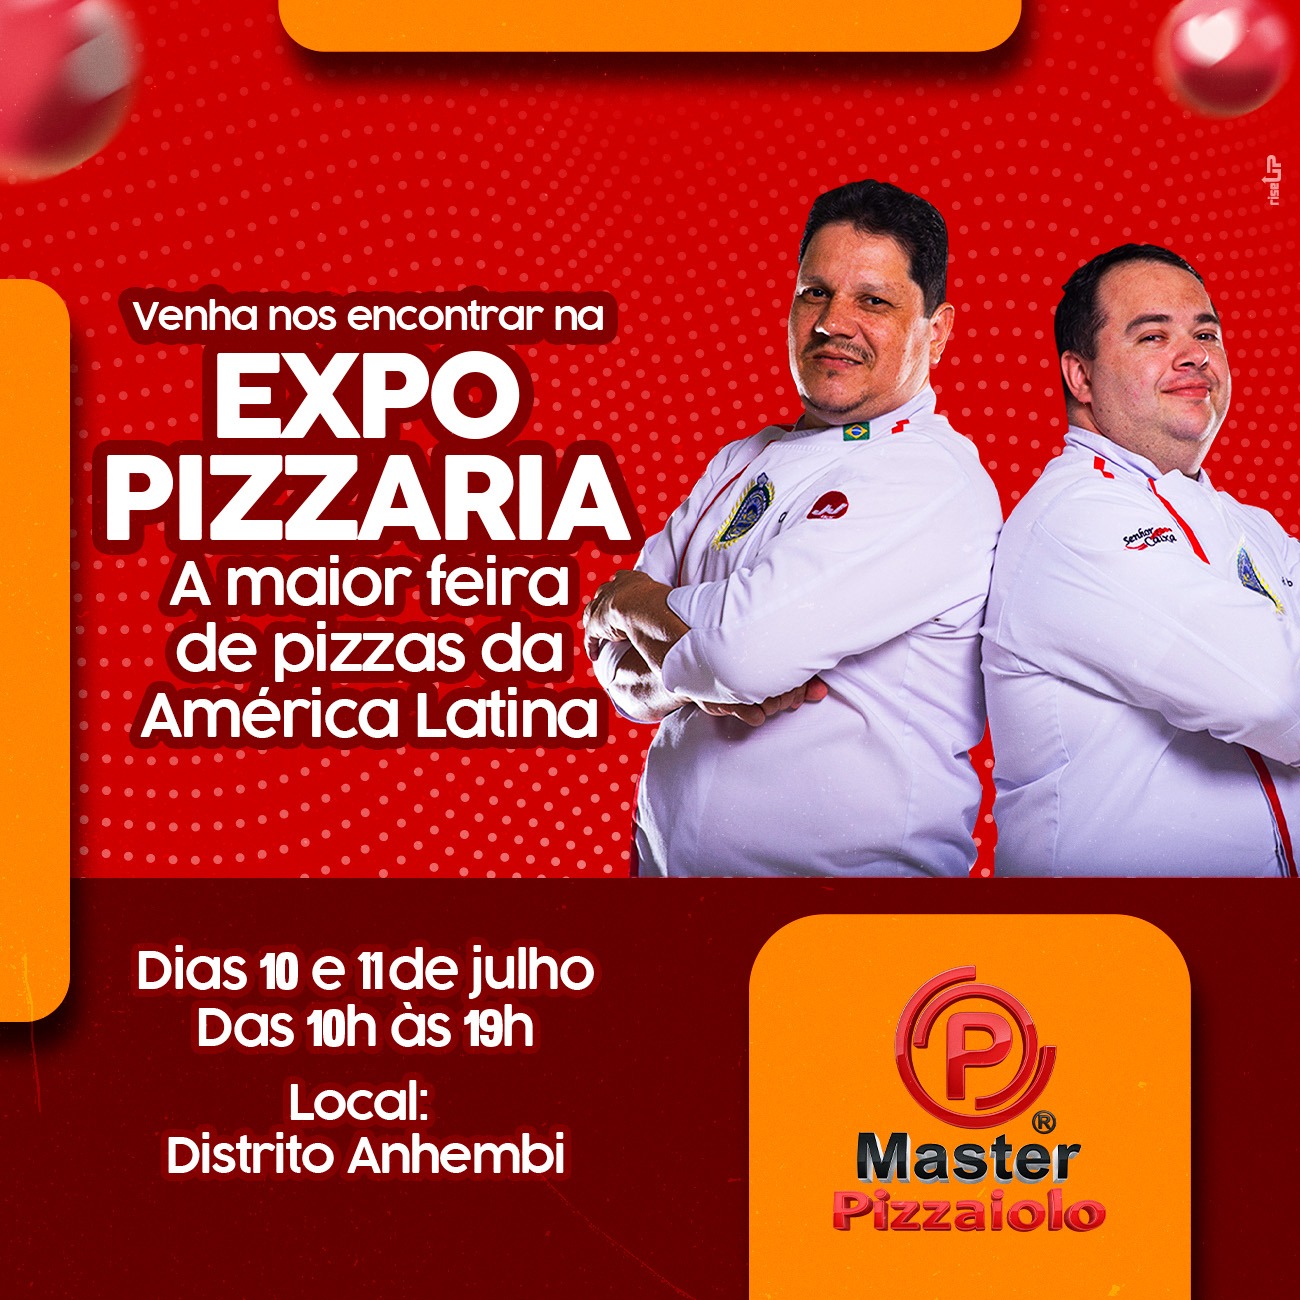 Expo Pizzaria – A maior feira de pizzas da América Latina